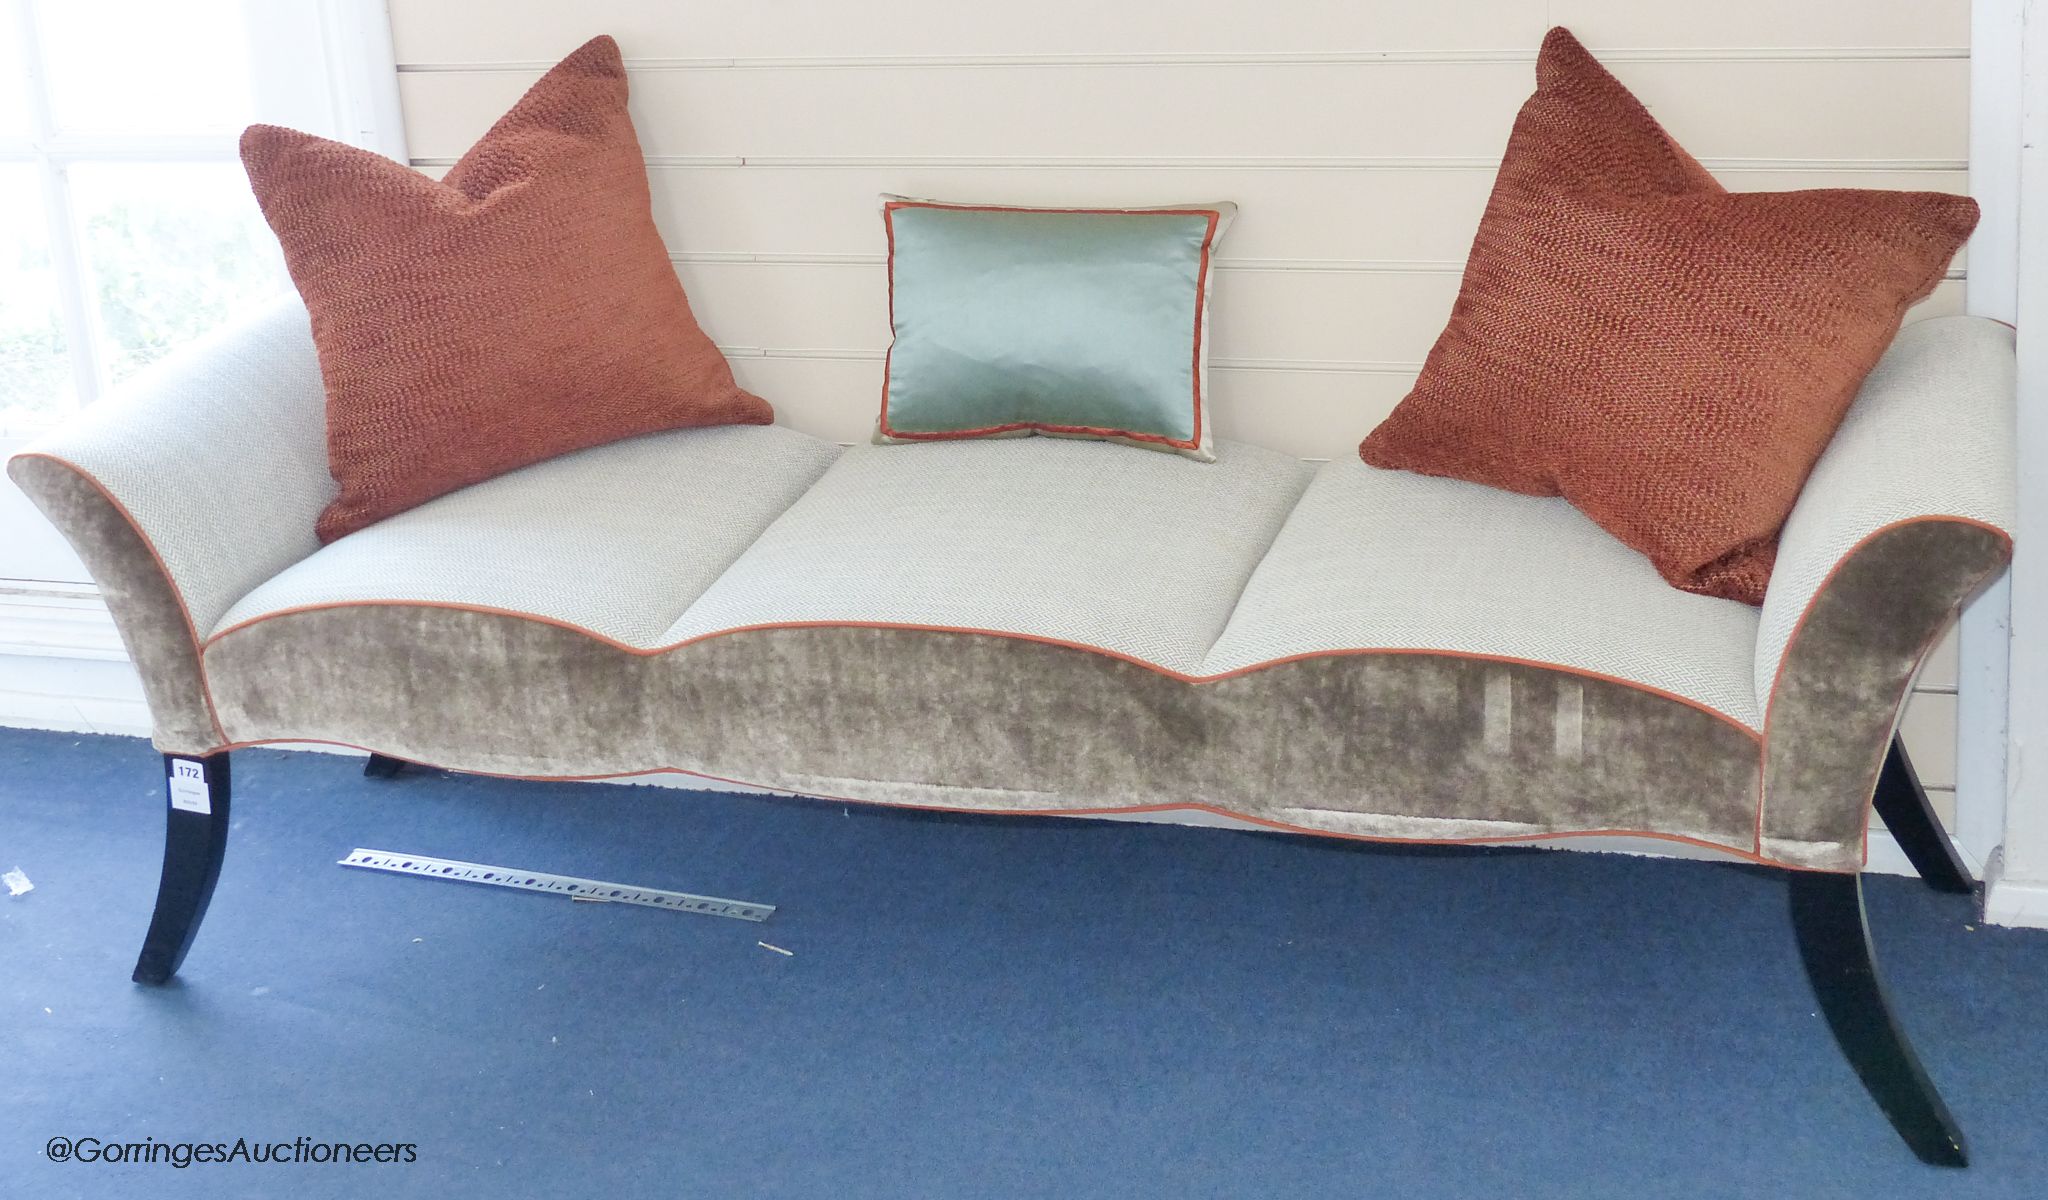 A herringbone and velvet upholstered window seat, 174cm long